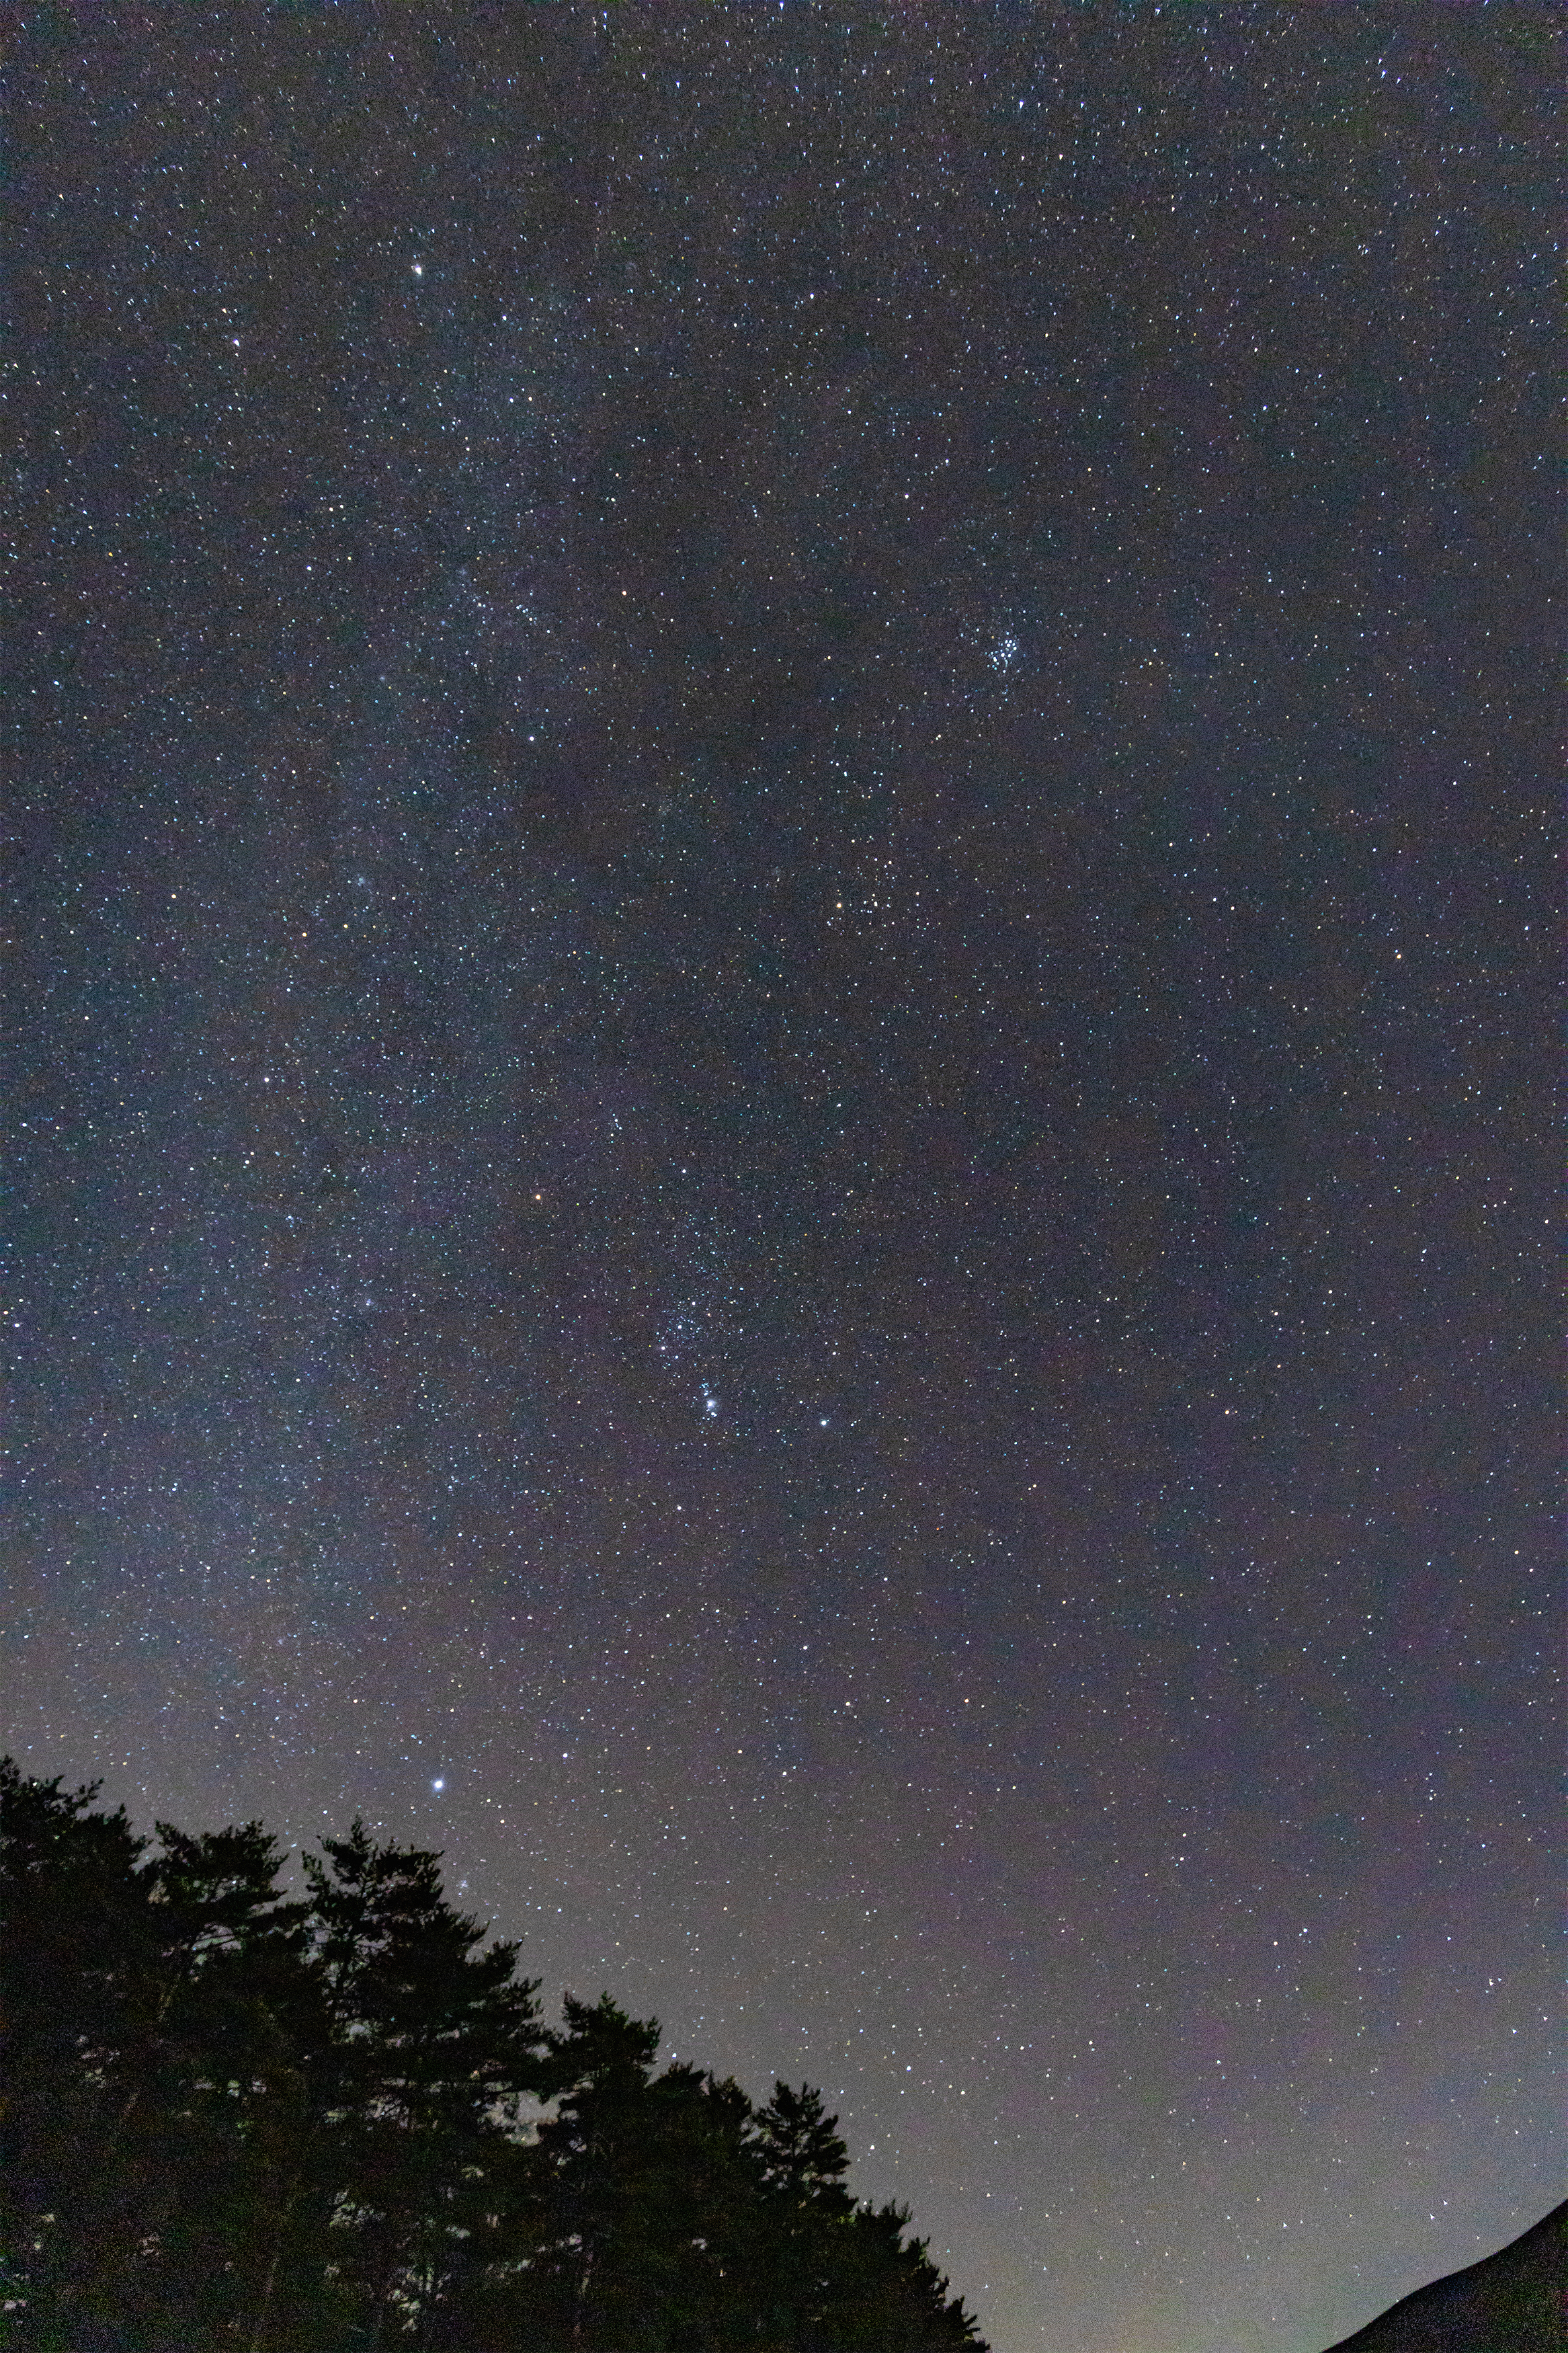 冬の星空 2 無料の高画質フリー写真素材 イメージズラボ